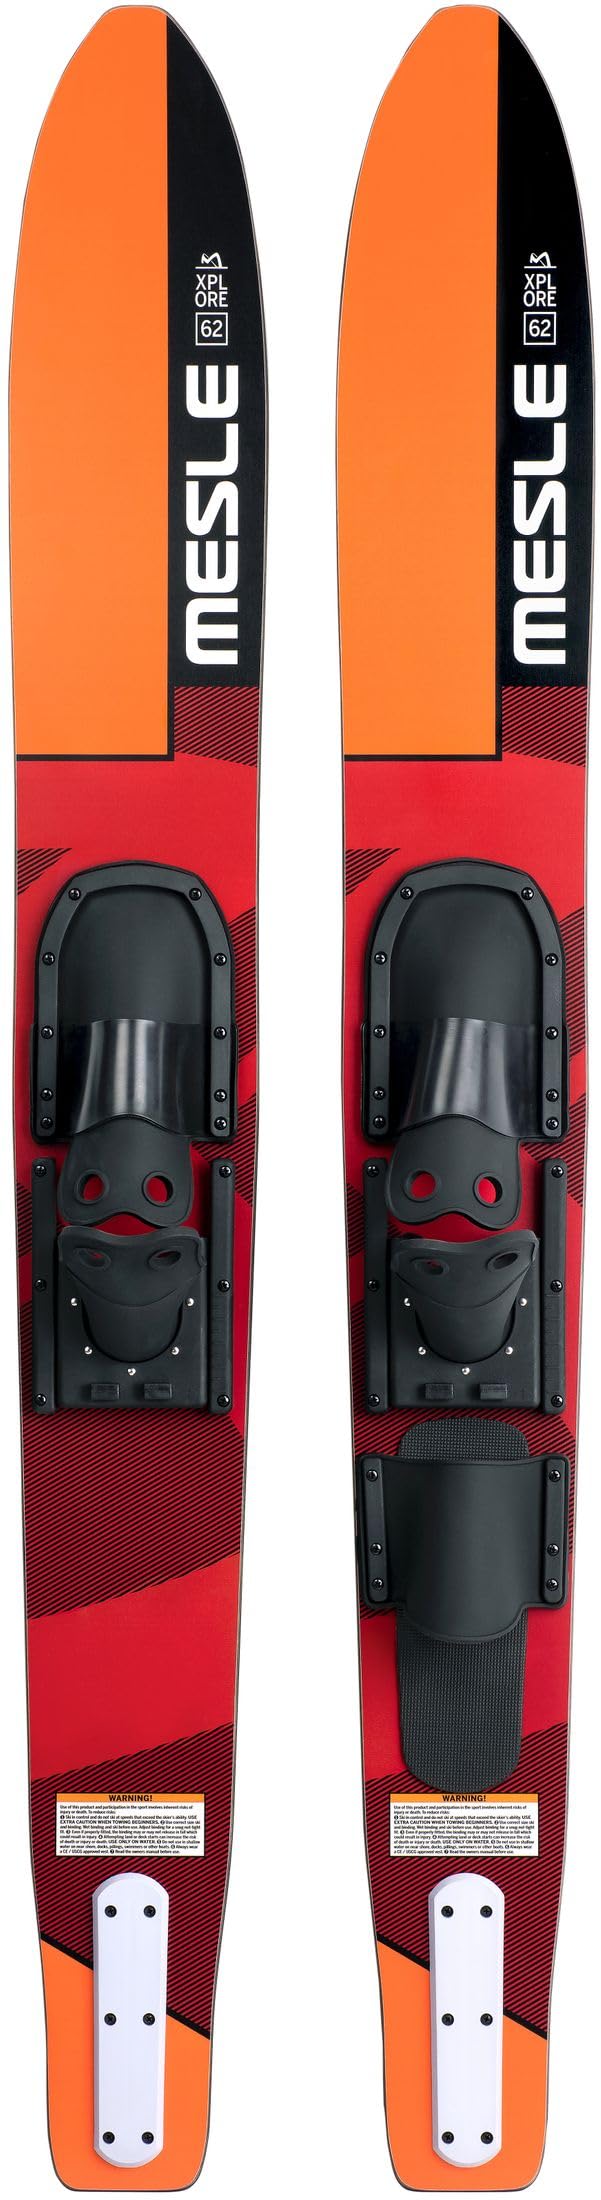 Mesle Combo Wasser-Ski XPlore 157 cm mit B2 Bindung, Anfänger und Fortgeschrittene Combo-Ski für Jugendliche und Erwachsene bis 90 kg